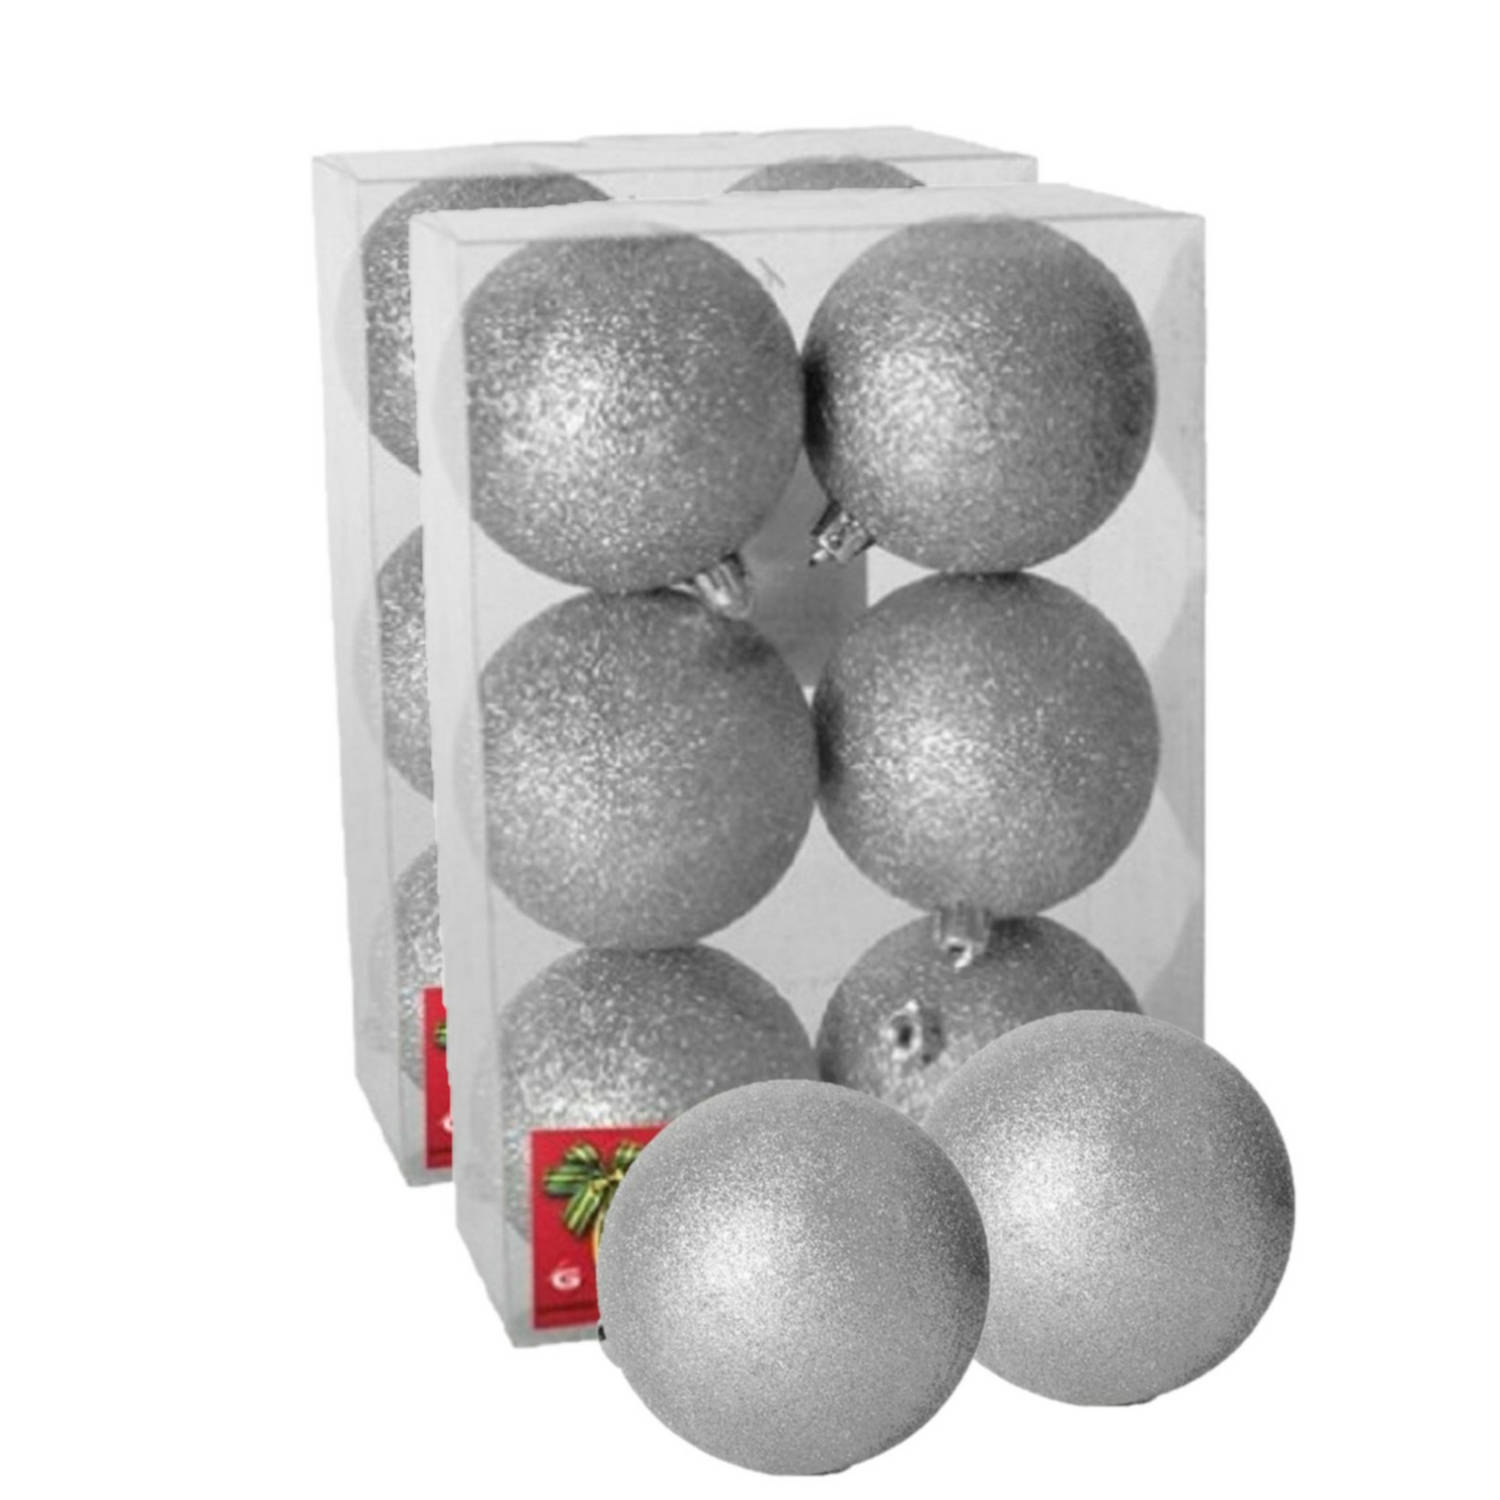 12x stuks kerstballen zilver glitters kunststof 4 cm Kerstbal